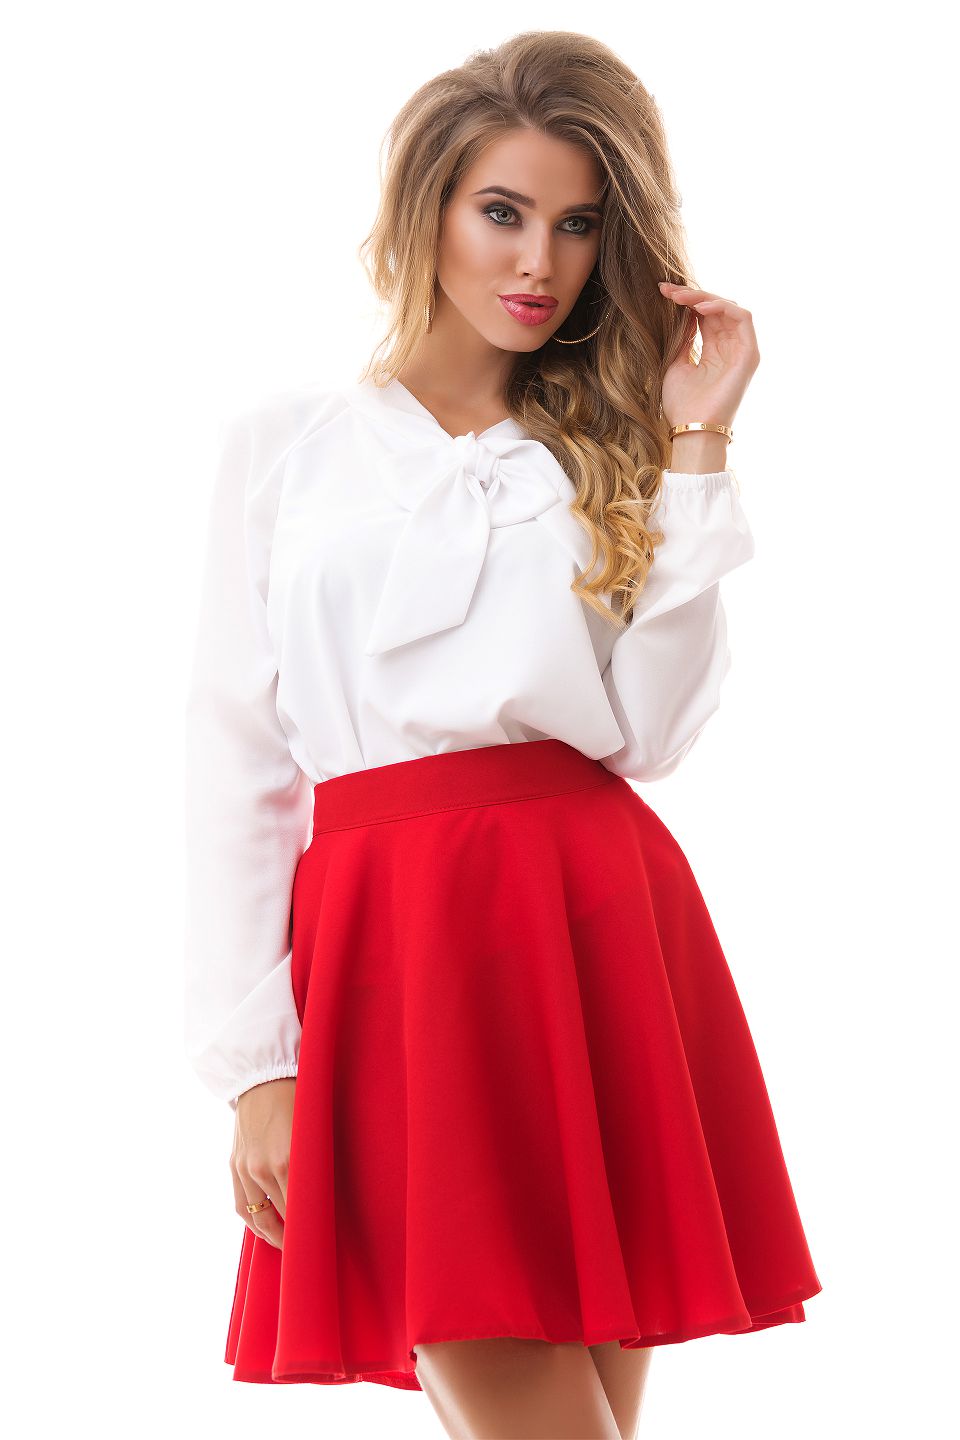 Красная юбка и белая блузка фото